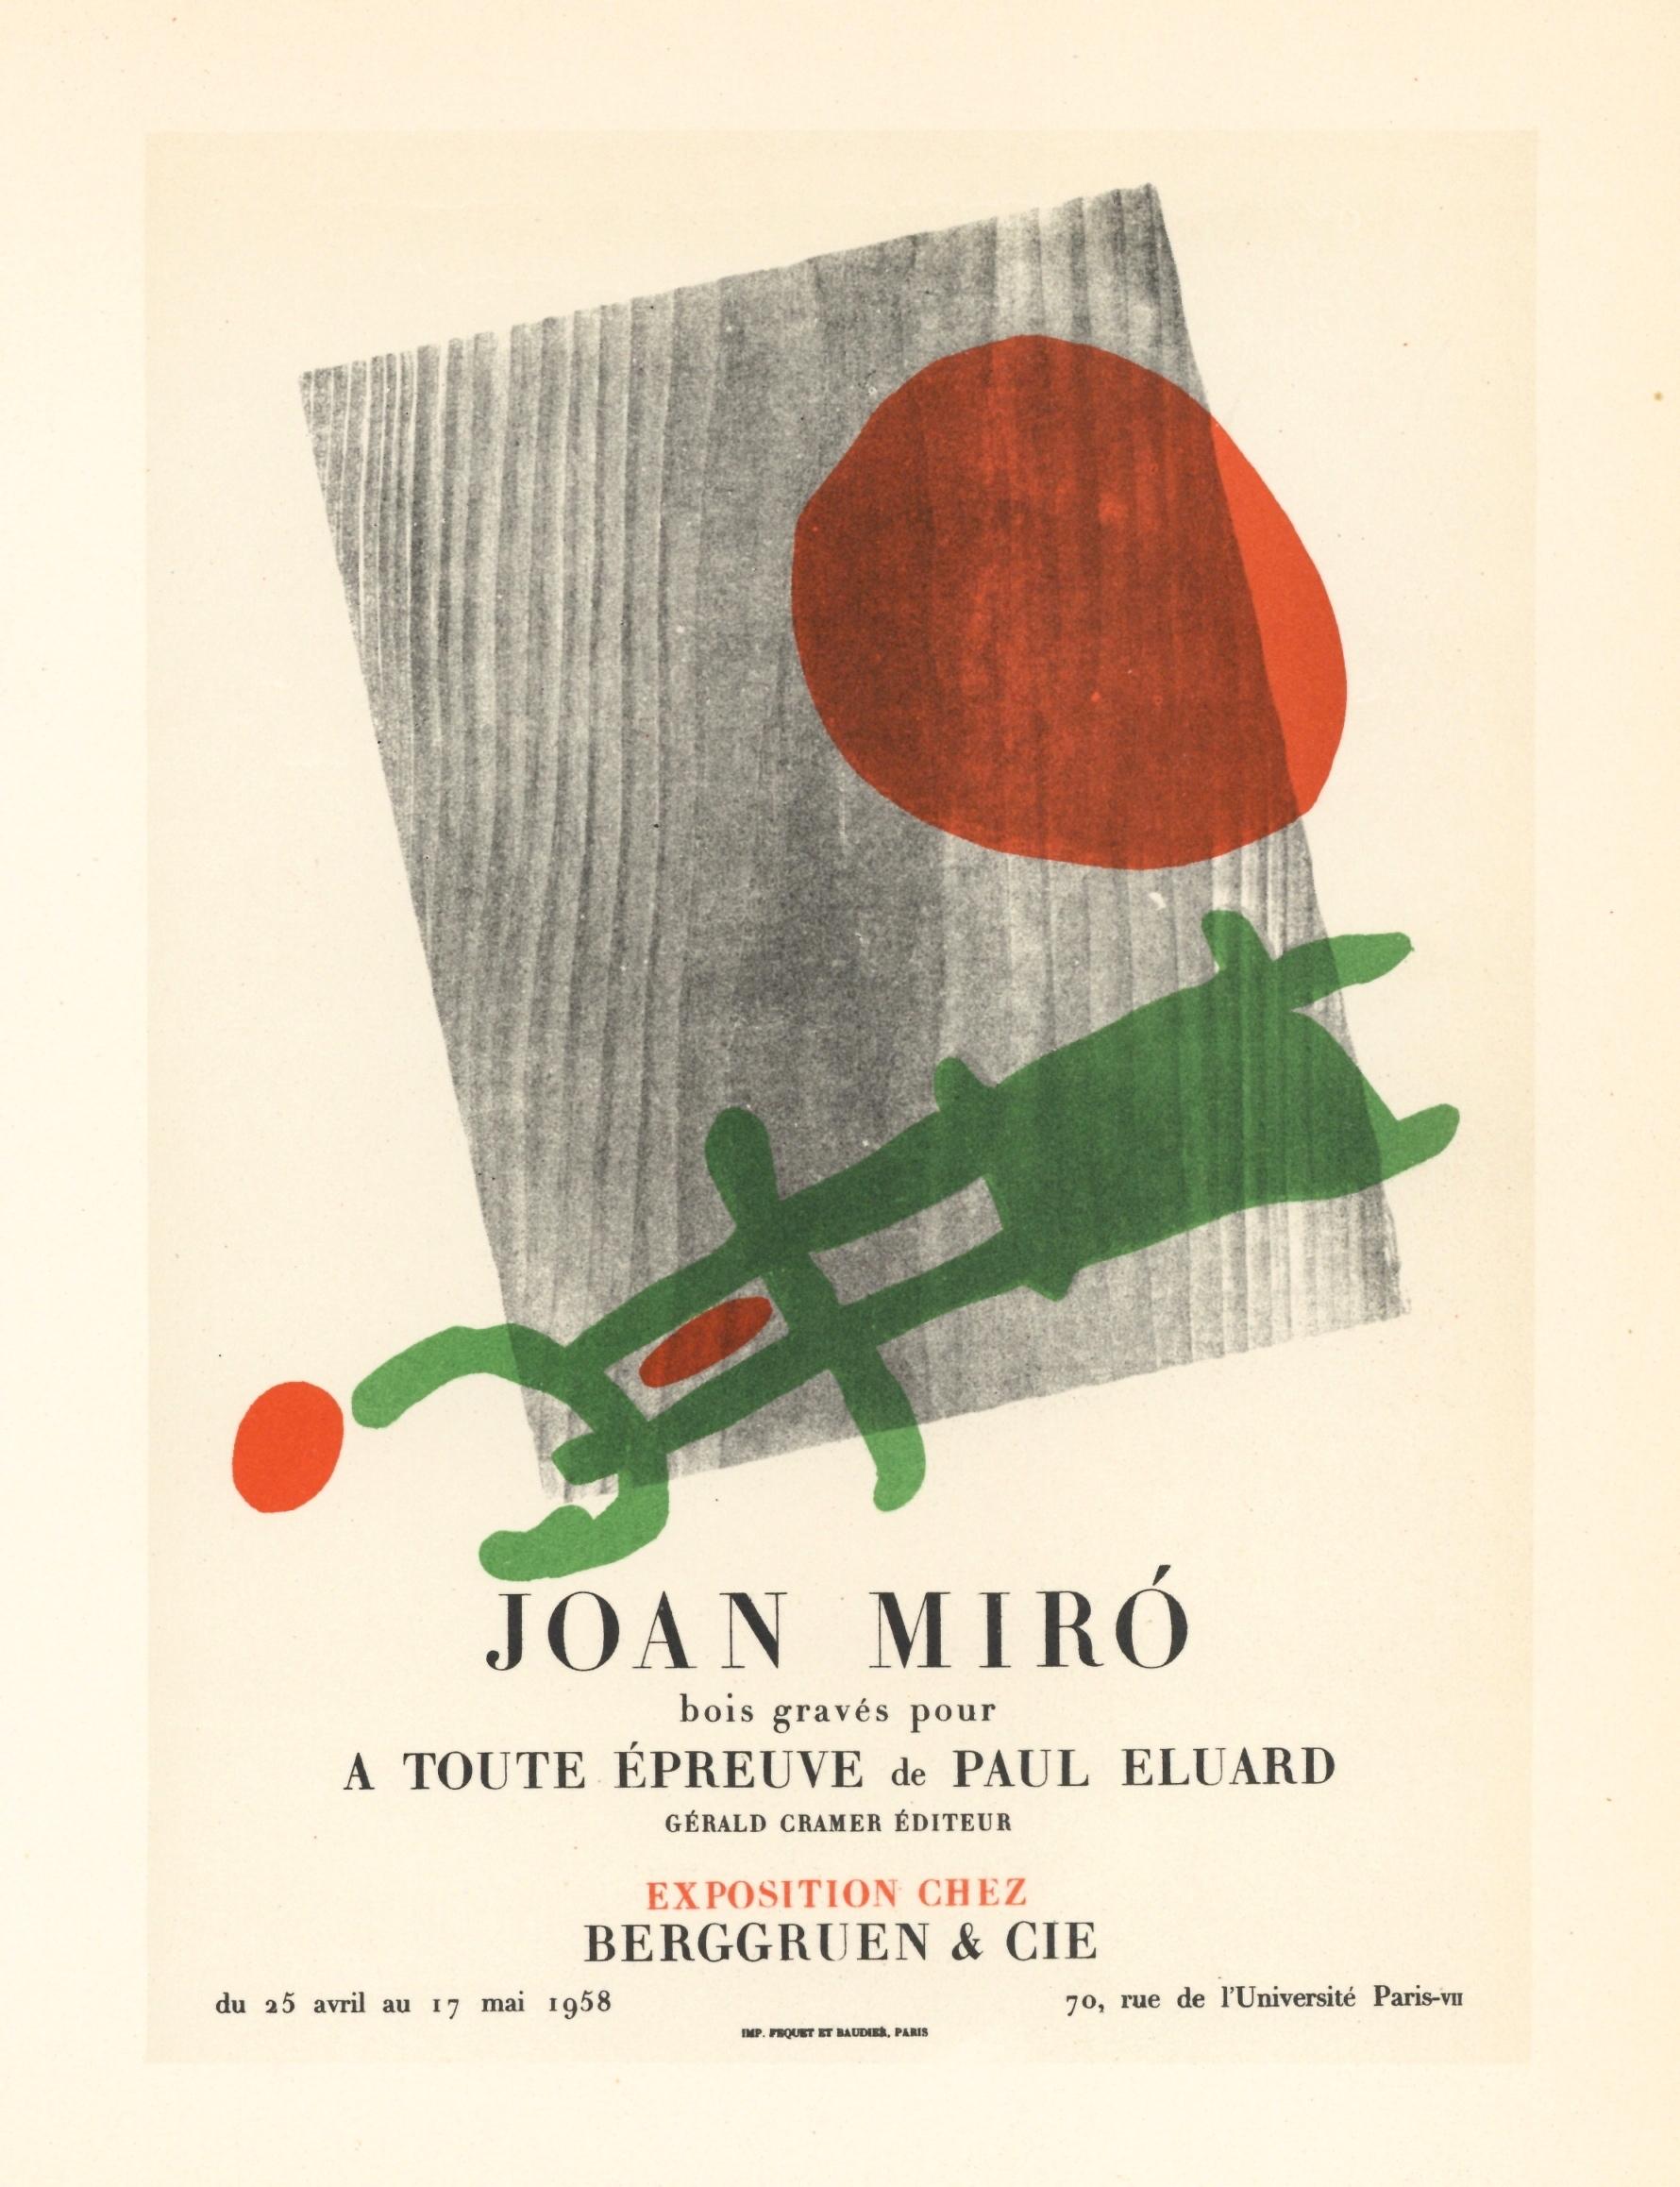 Affiche en lithographie « A Toute Epreuve » - Print de (after) Joan Miró